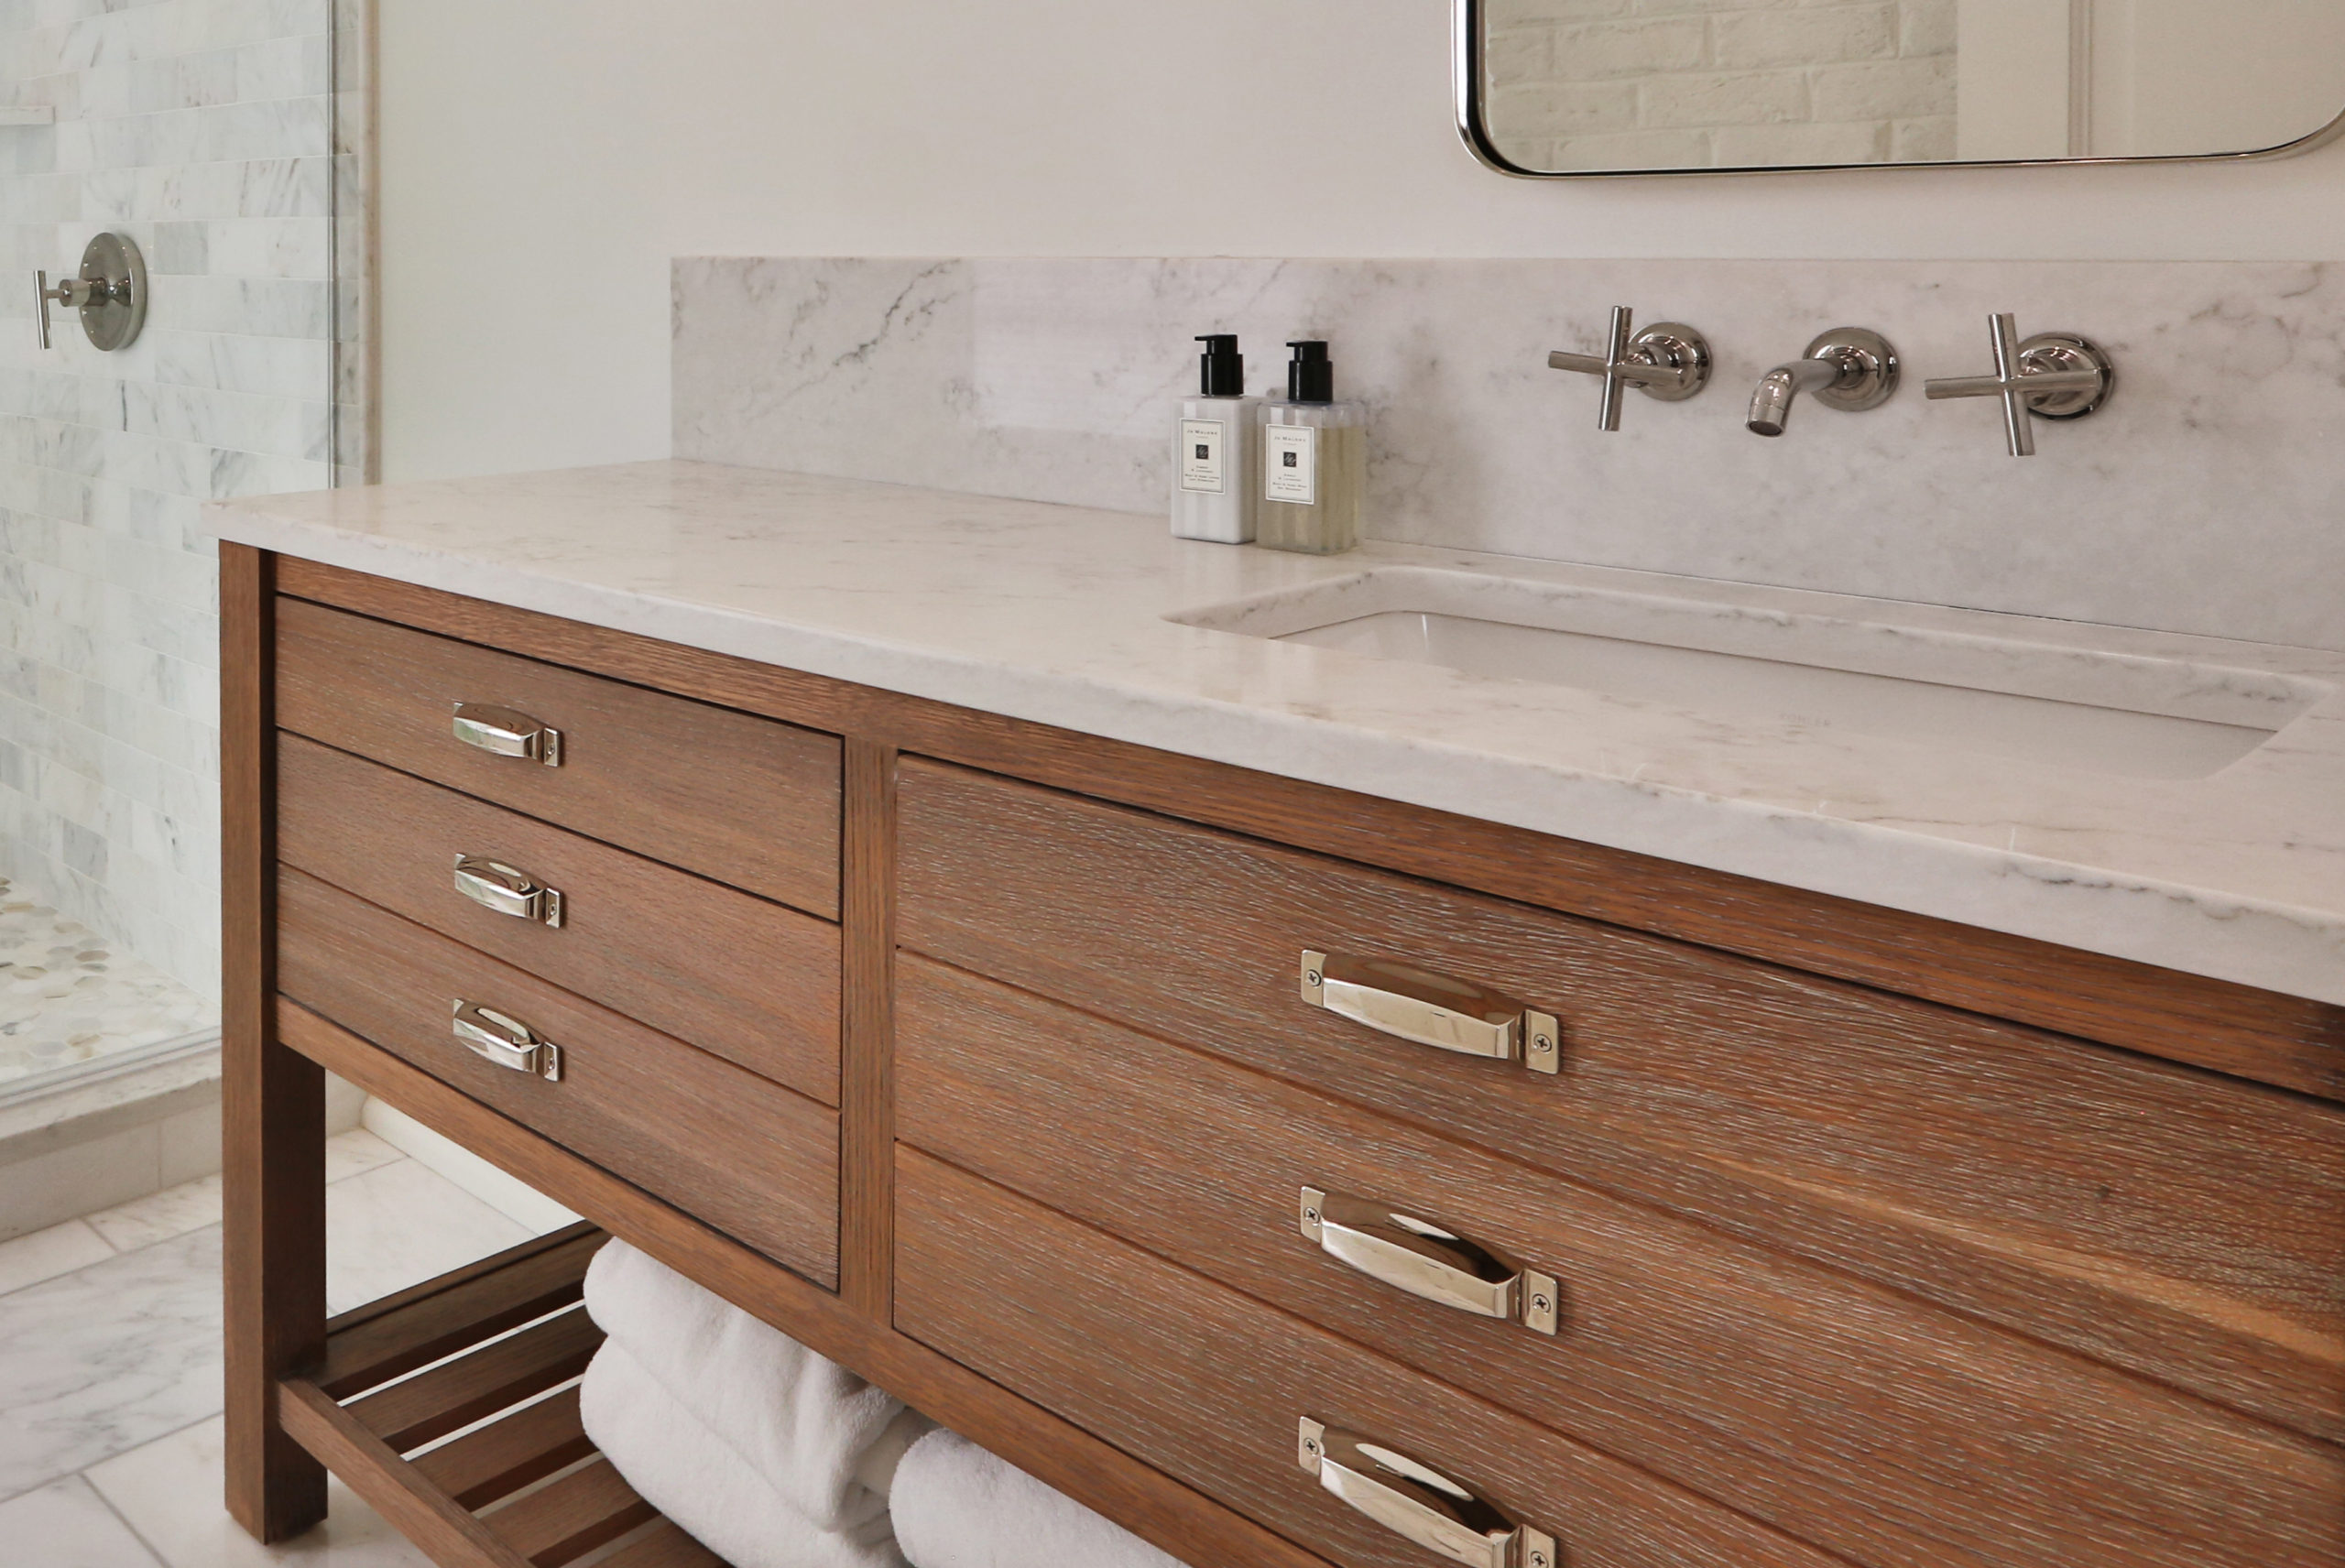 Bathroom vanity medium wood with open shelving below drawers